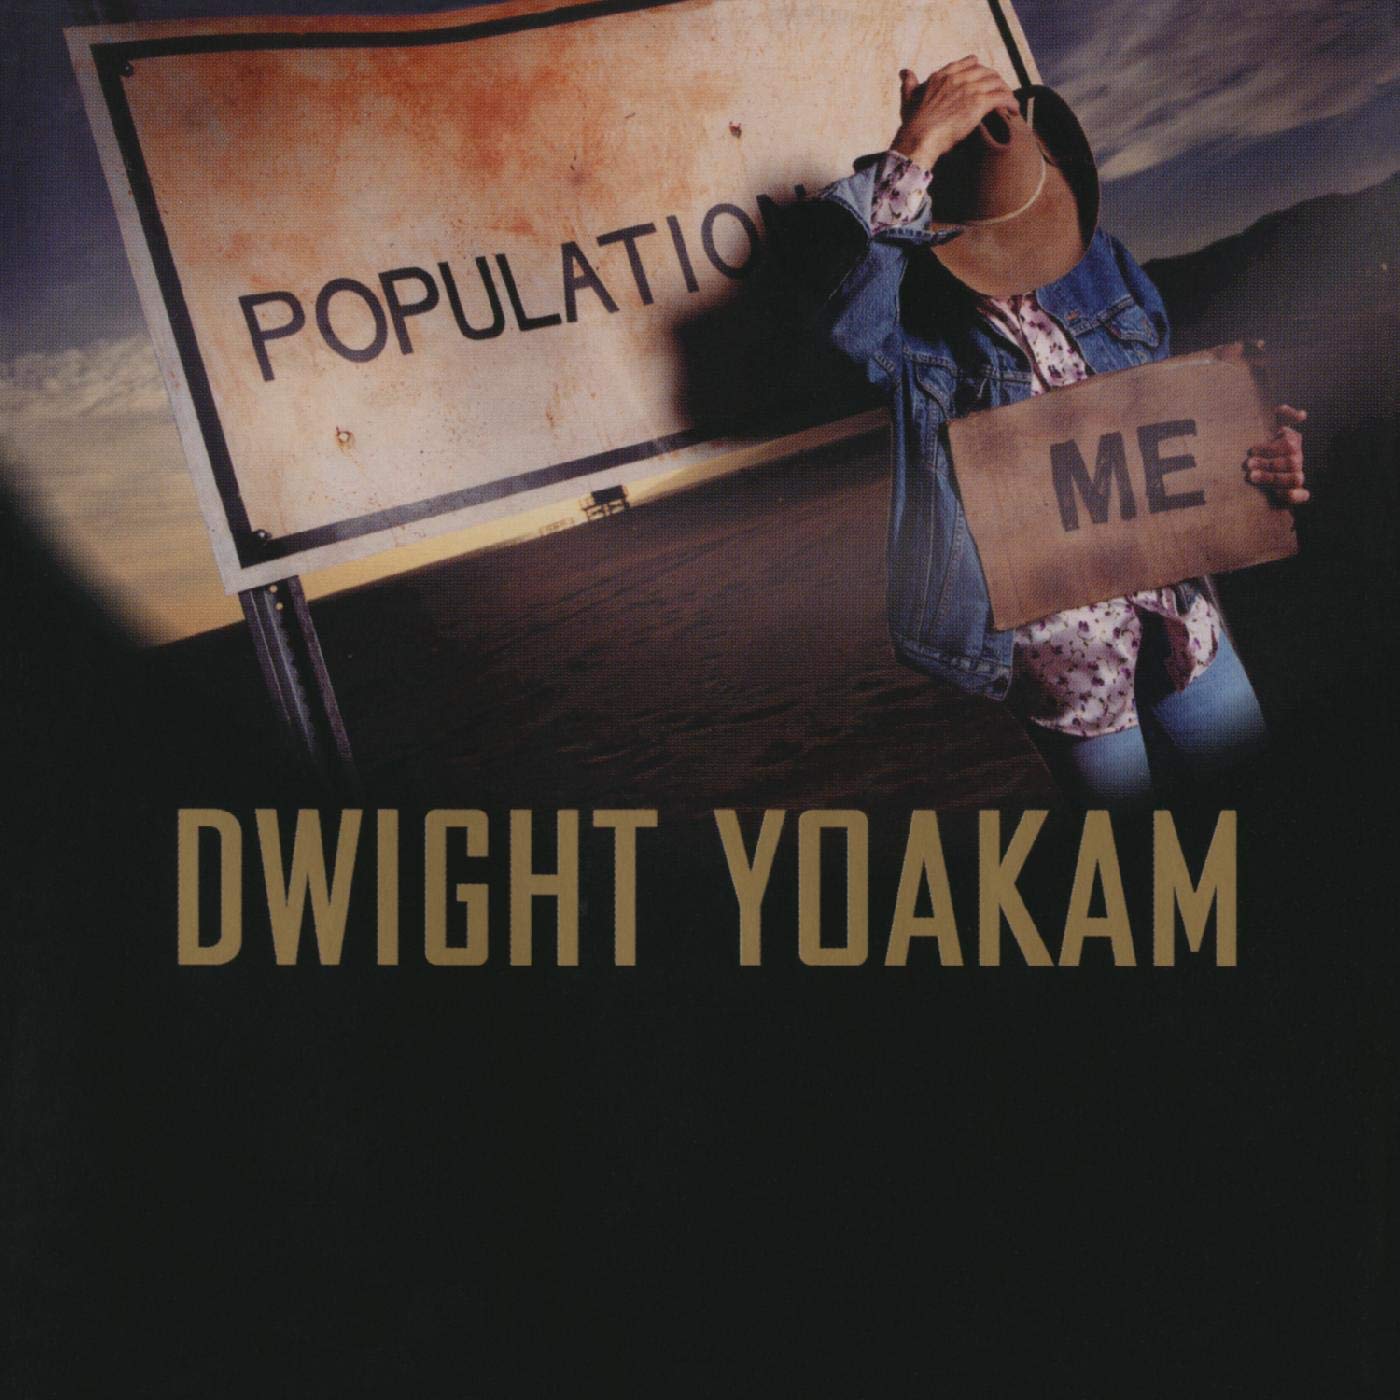 Yoakam, Dwight - Population Me